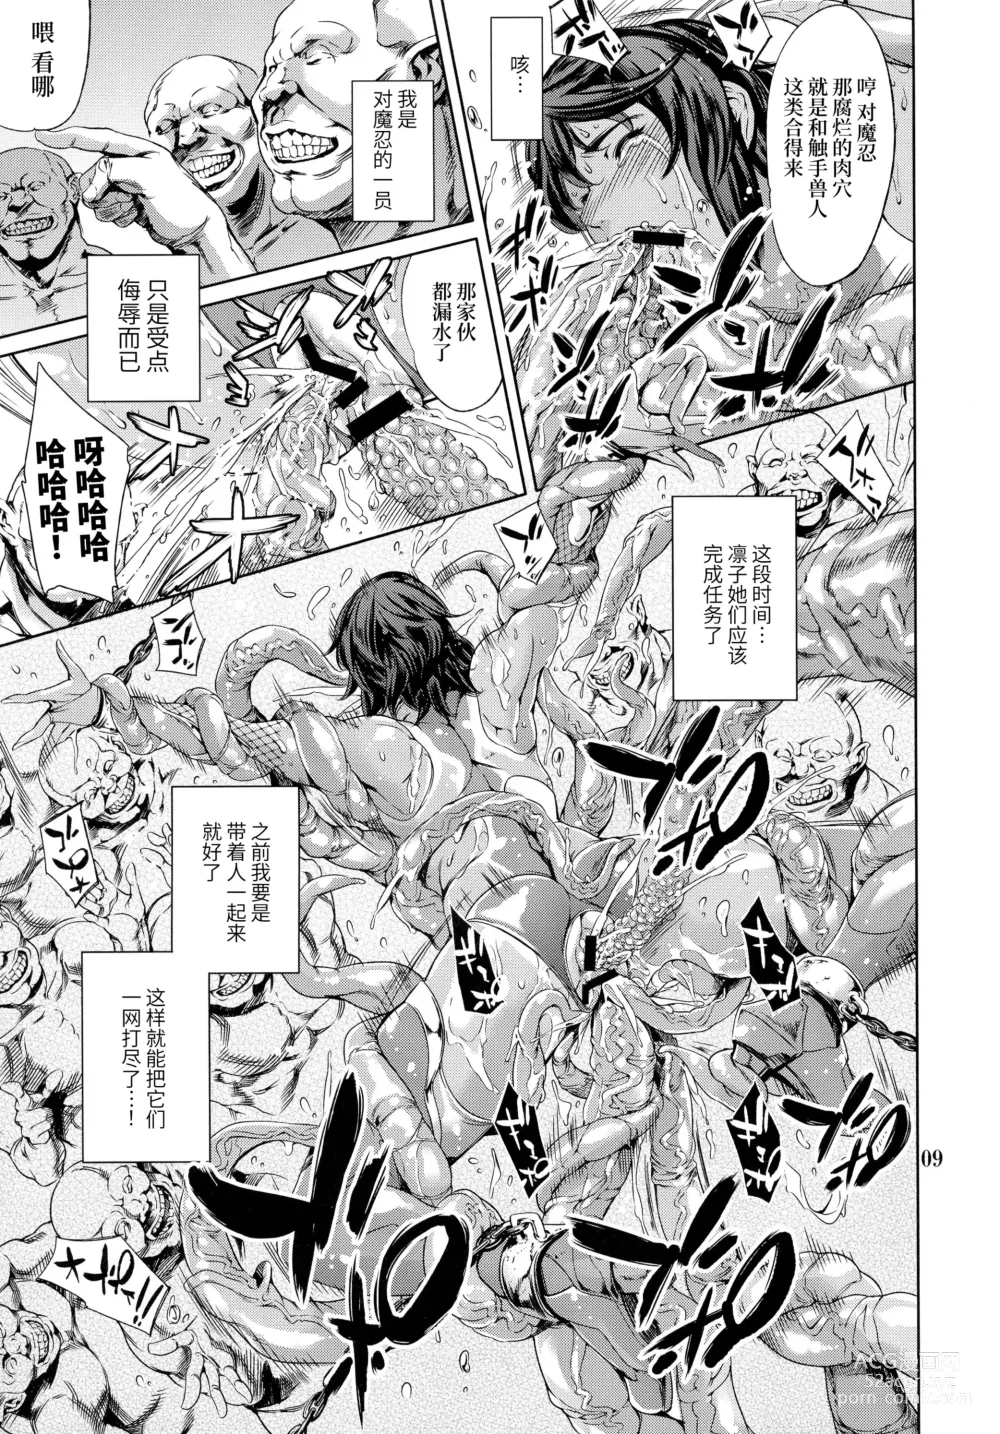 Page 9 of doujinshi REN